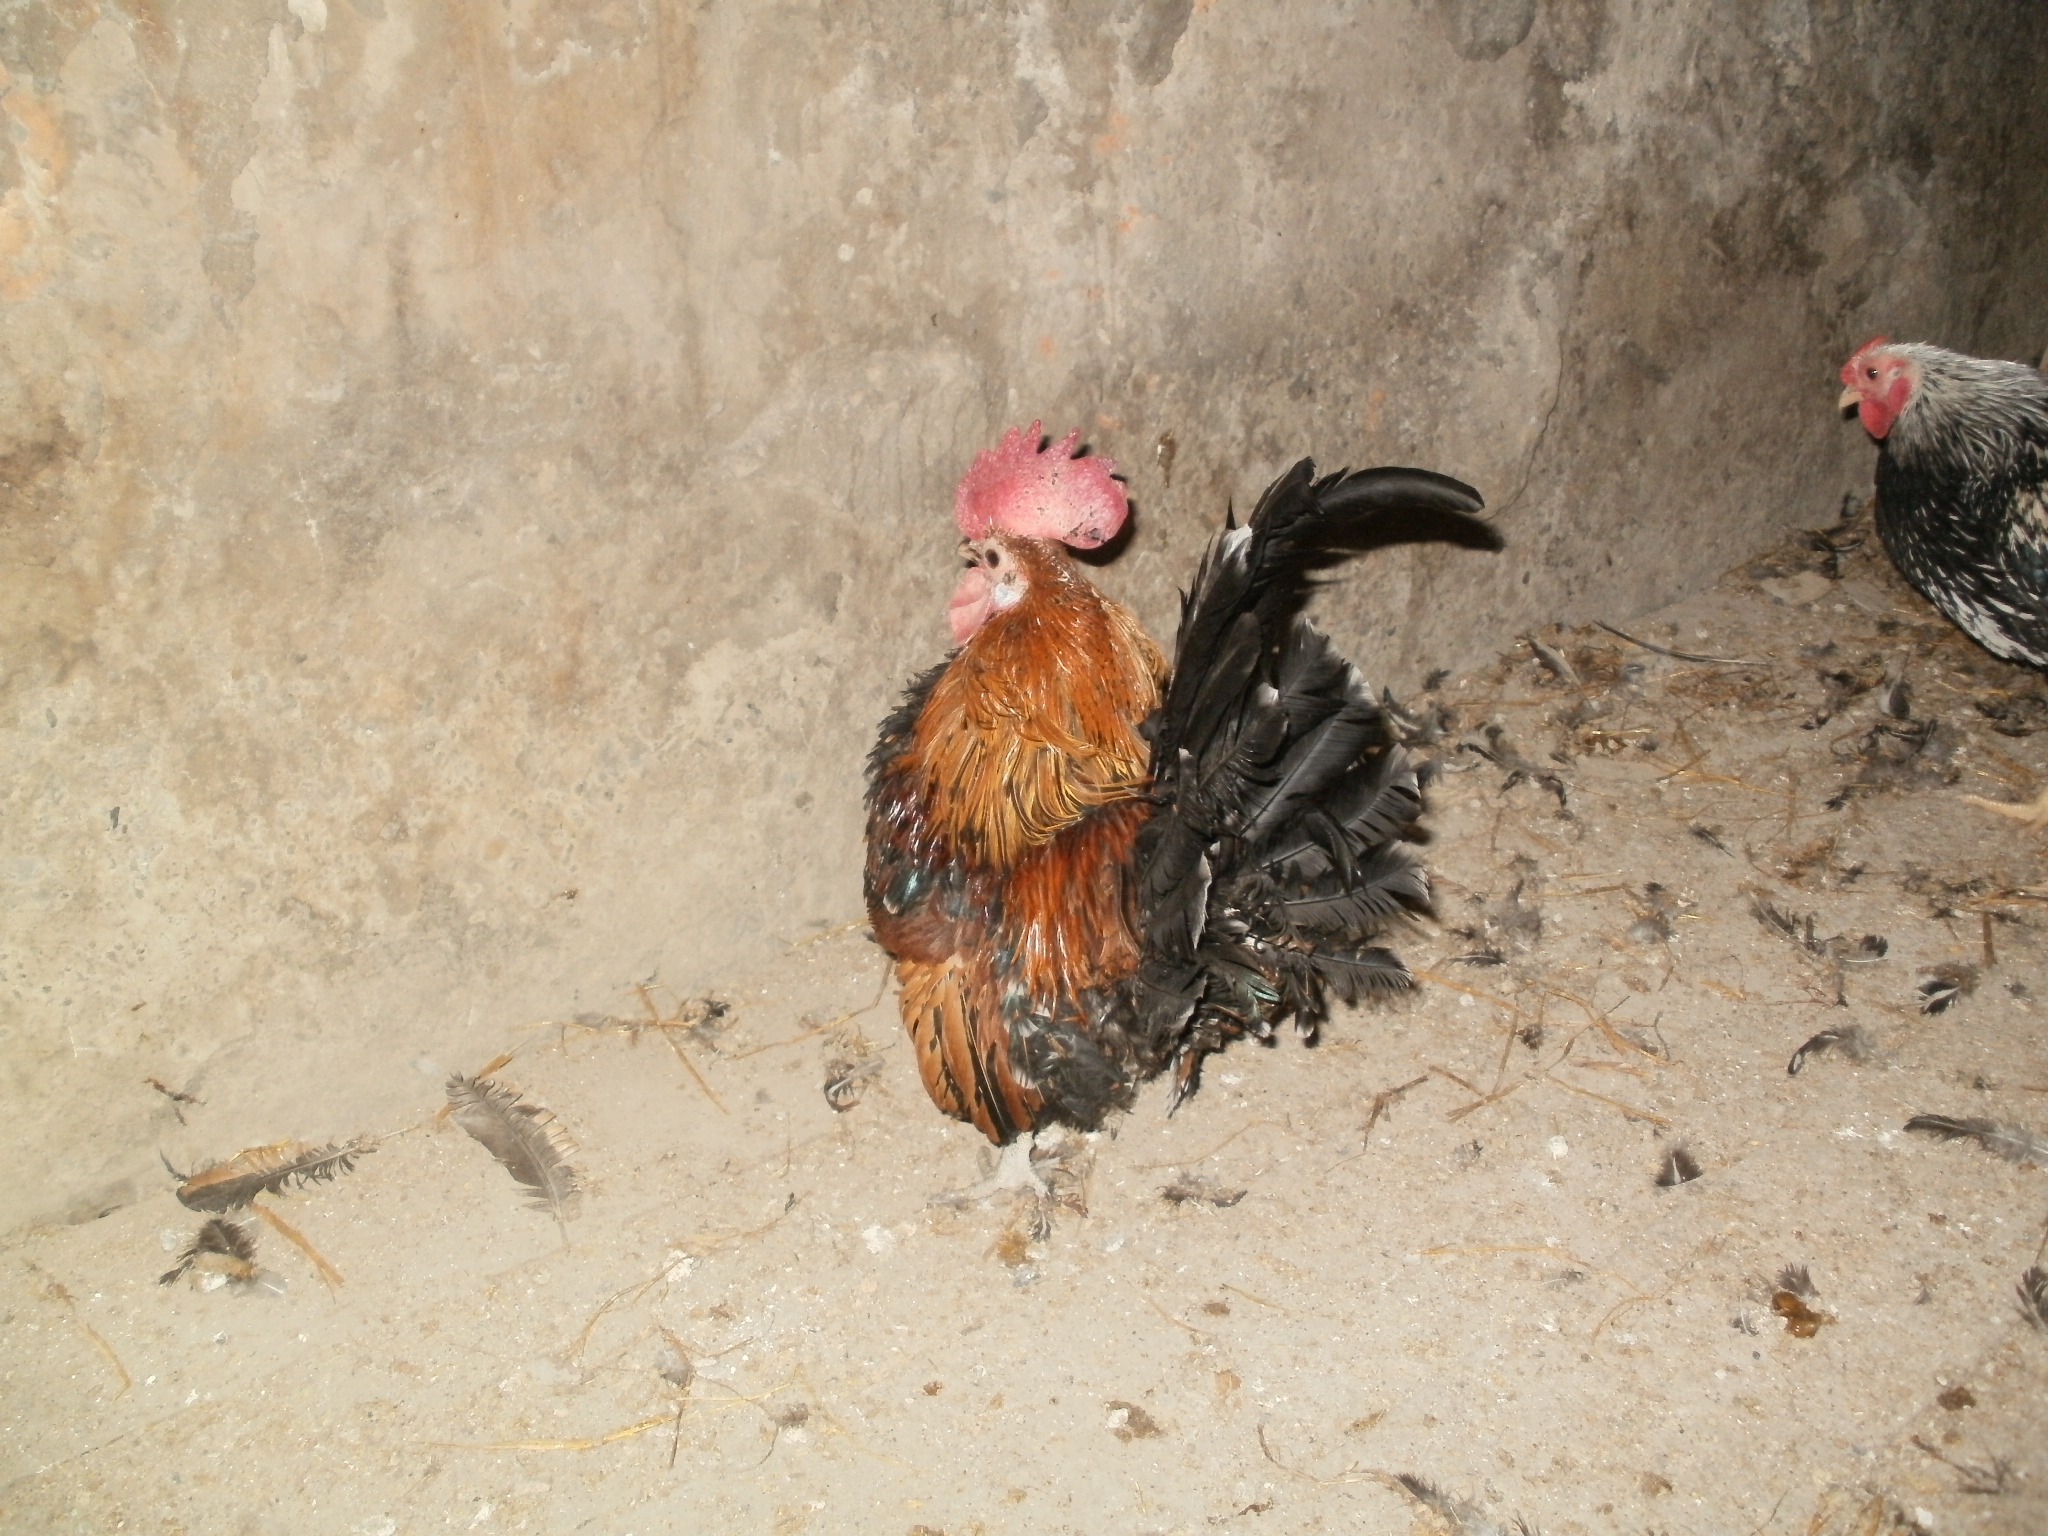 Лысая порода кур – описание, фото и видео из Израиля